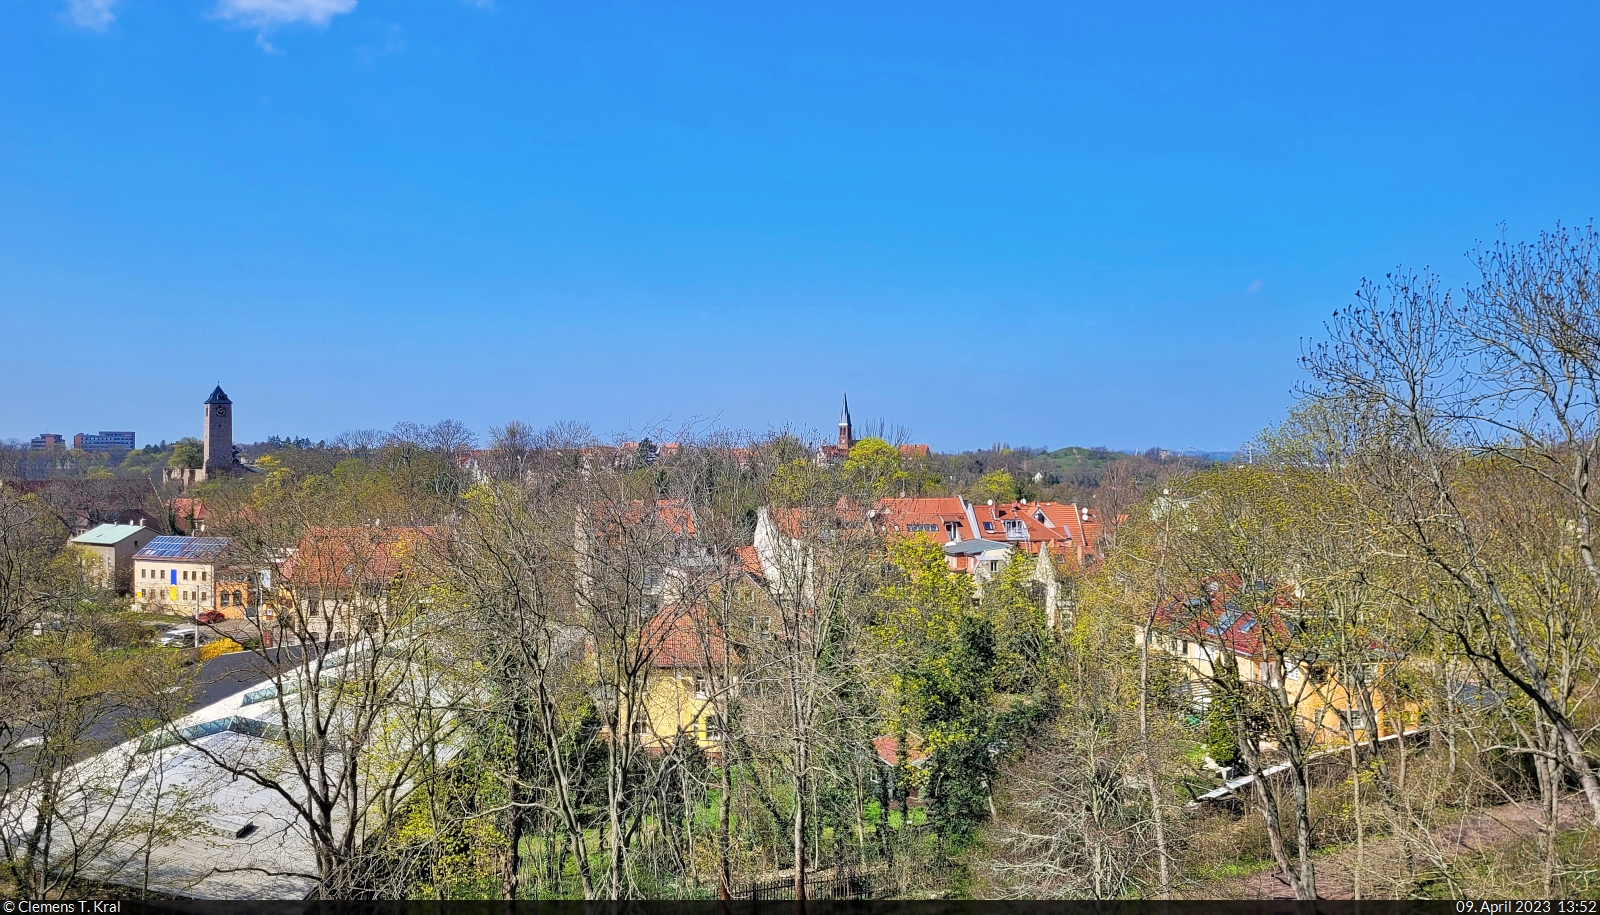 Am sehr sonnigen Ostersonntag wurde der Giebichensteinblick in Halle (Saale) besucht.

🕓 9.4.2023 | 13:52 Uhr